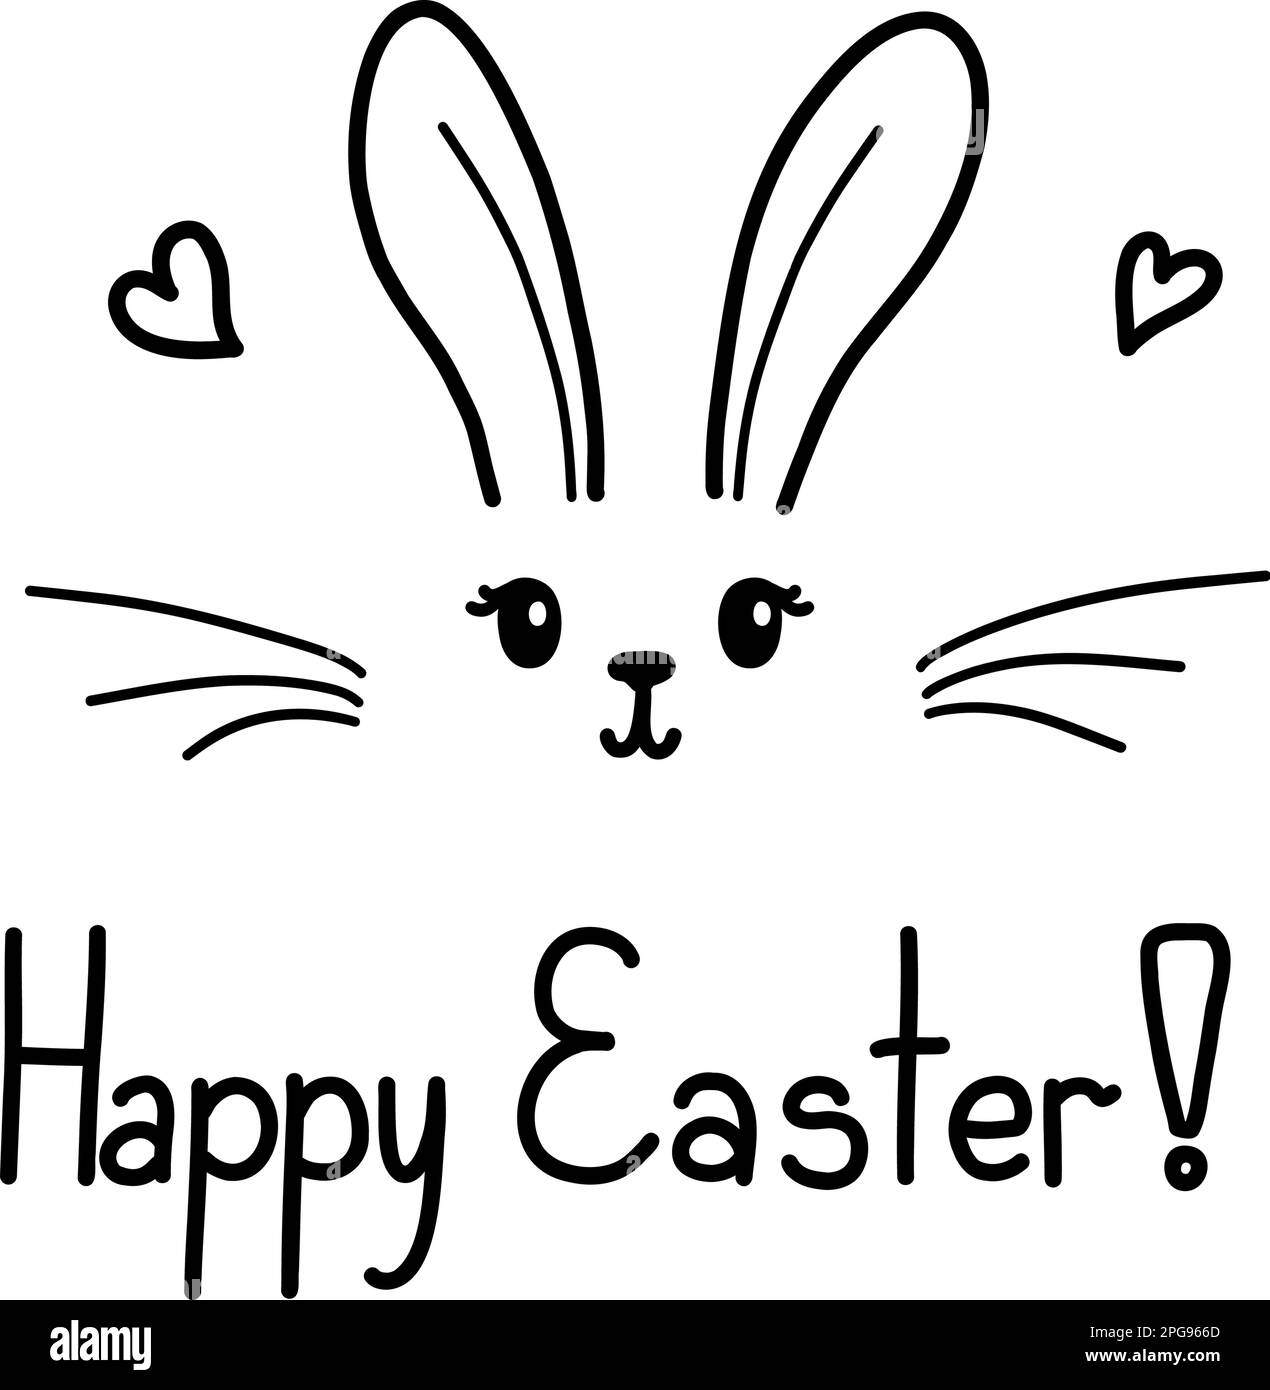 Süßes Osterhasen-Vektorbild, handgezeichneter Kinderhasen. Grußkarte Happy Easter isoliert auf weißem Hintergrund. Stock Vektor